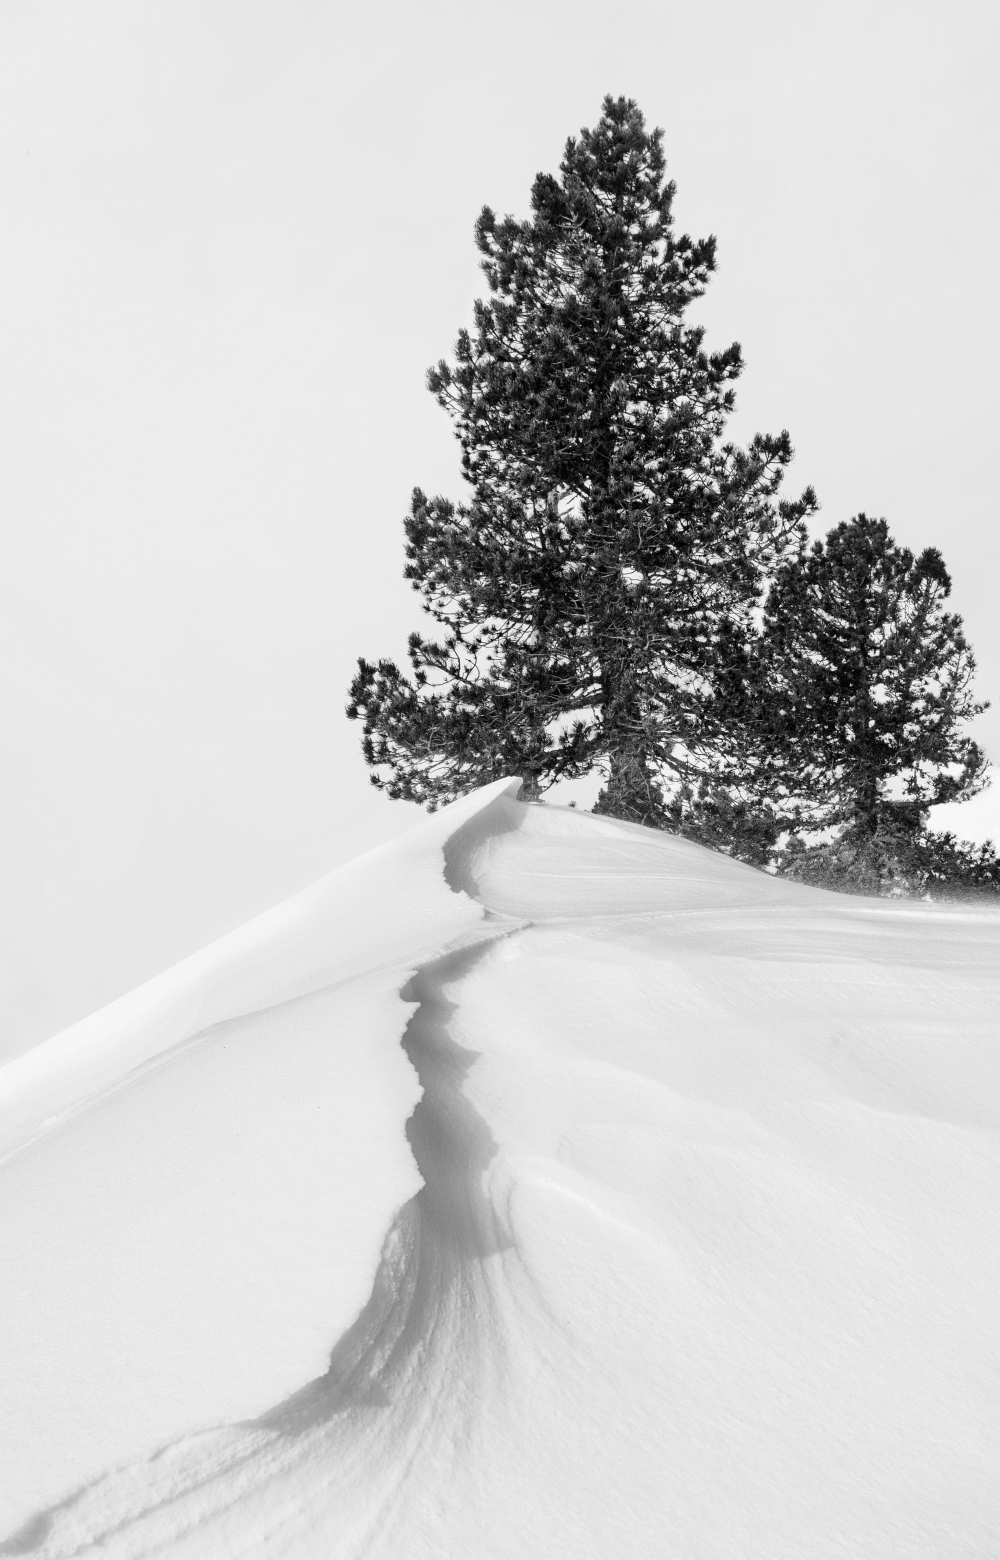 Image: Rodrigo Núñez Buj - About the snow and forms